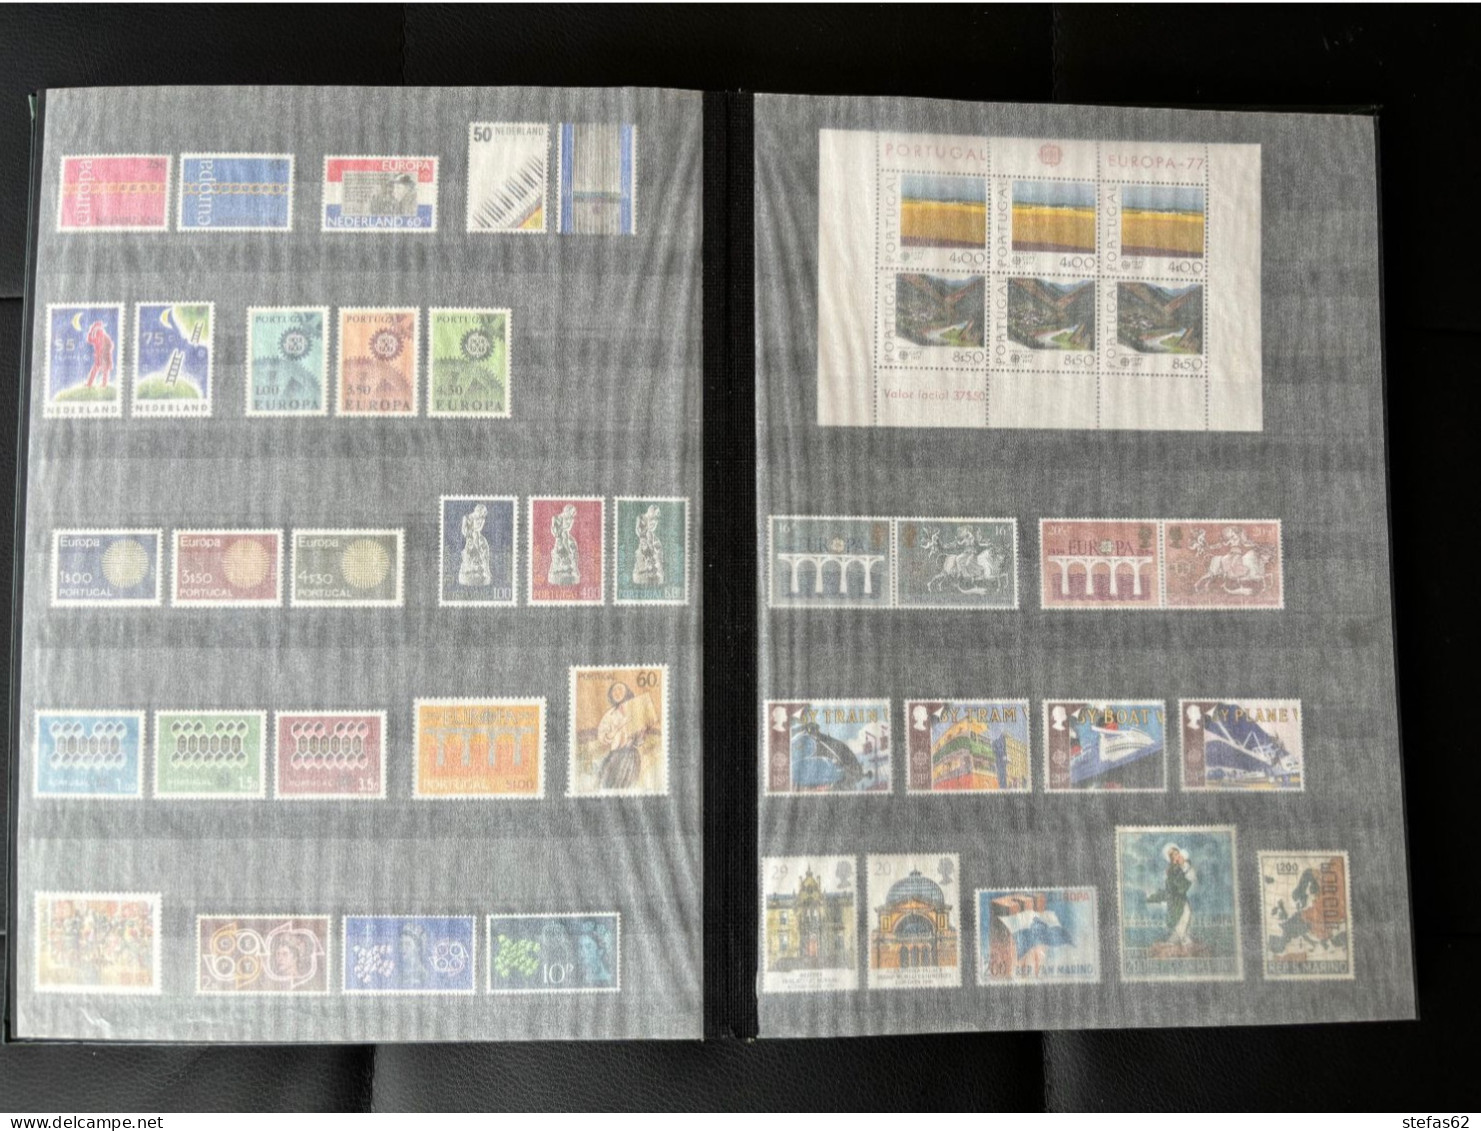 Collection timbres Europa neufxx